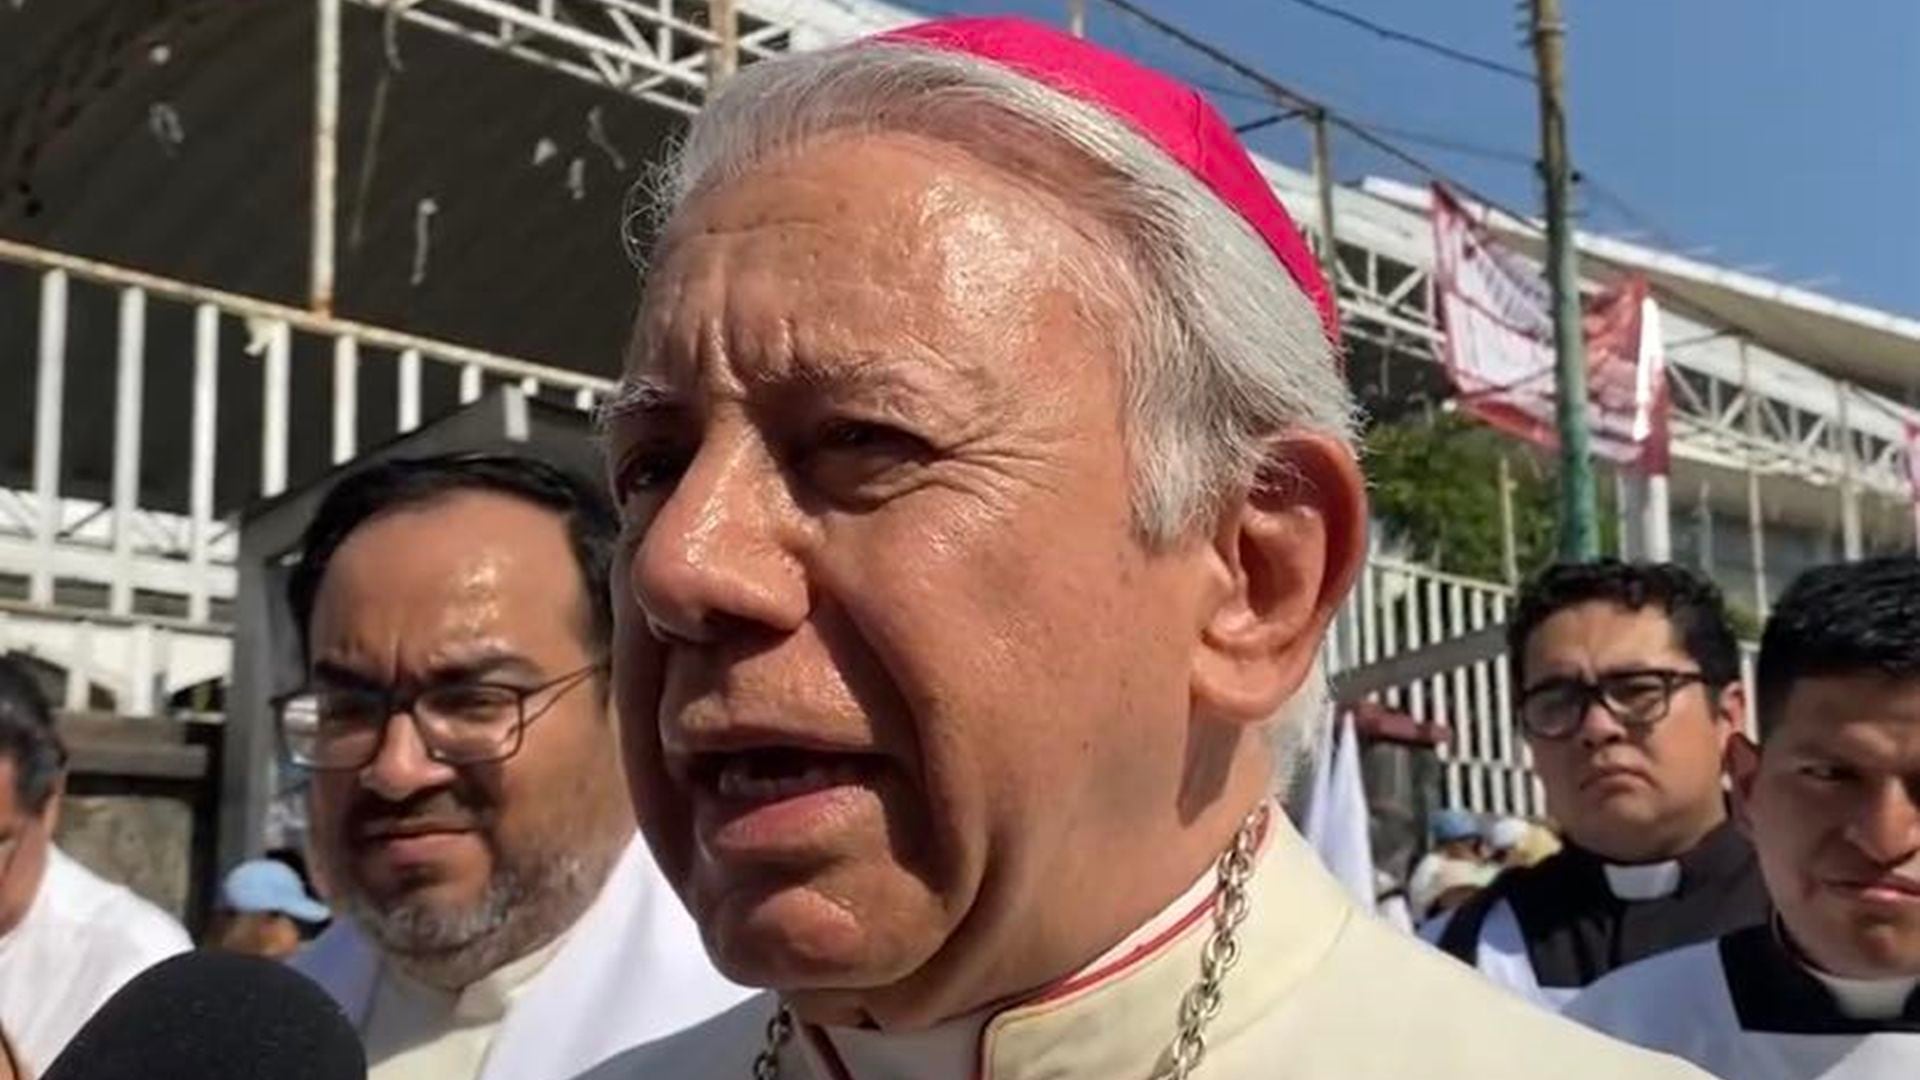 Obispo de Cuernavaca denuncia que crimen organizado obliga a personas a votar por ciertos partidos en Morelos